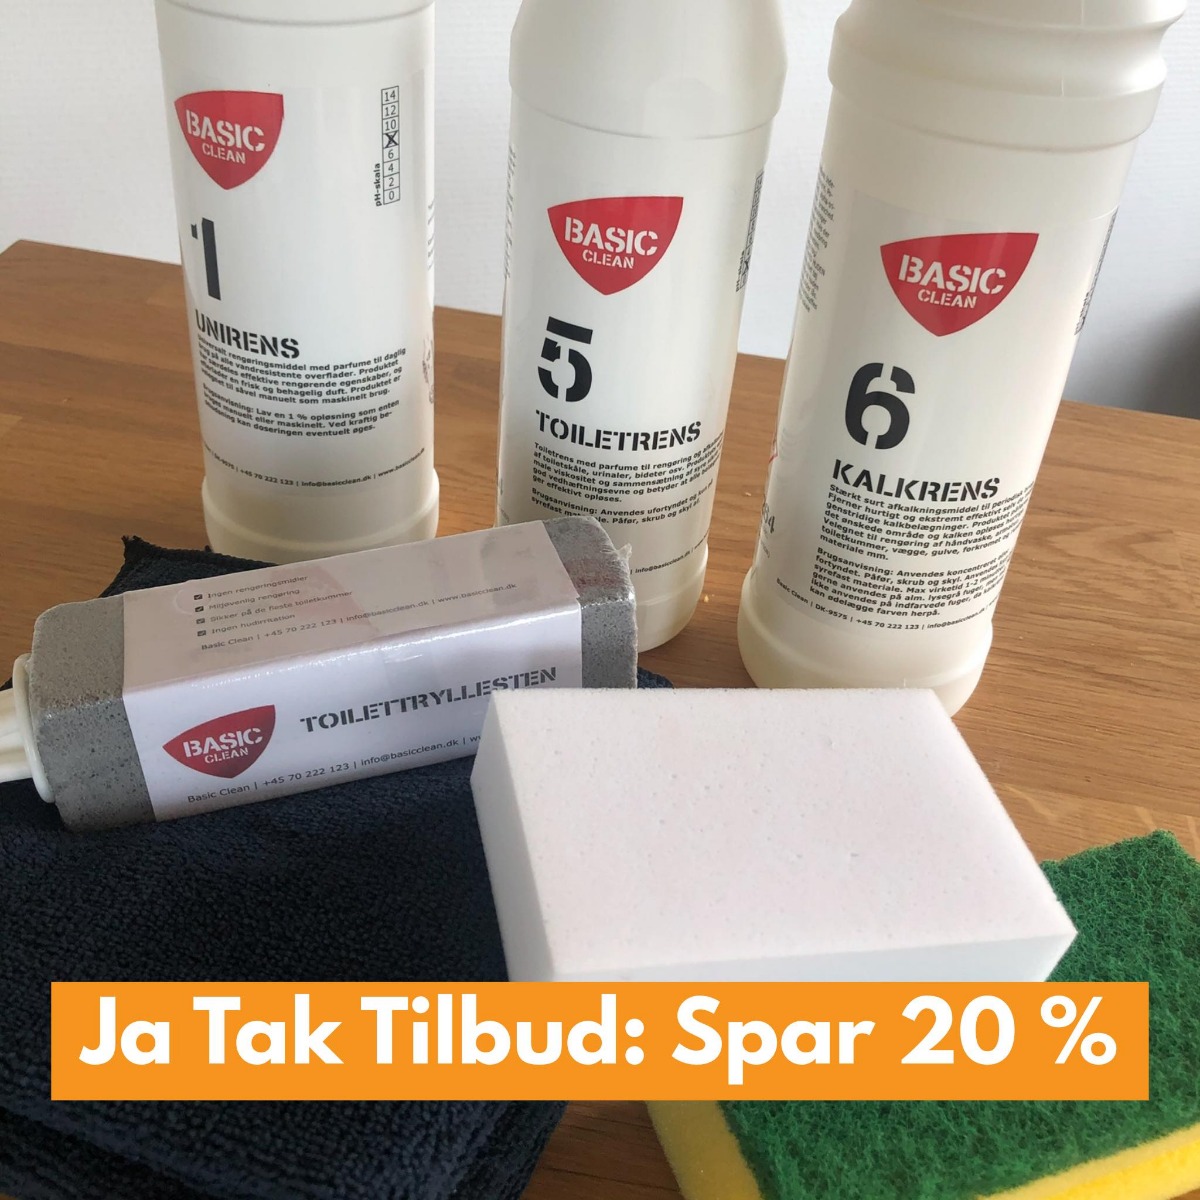 JA TAK TILBUD (Spar 20 % + få 2 gratis gaver)